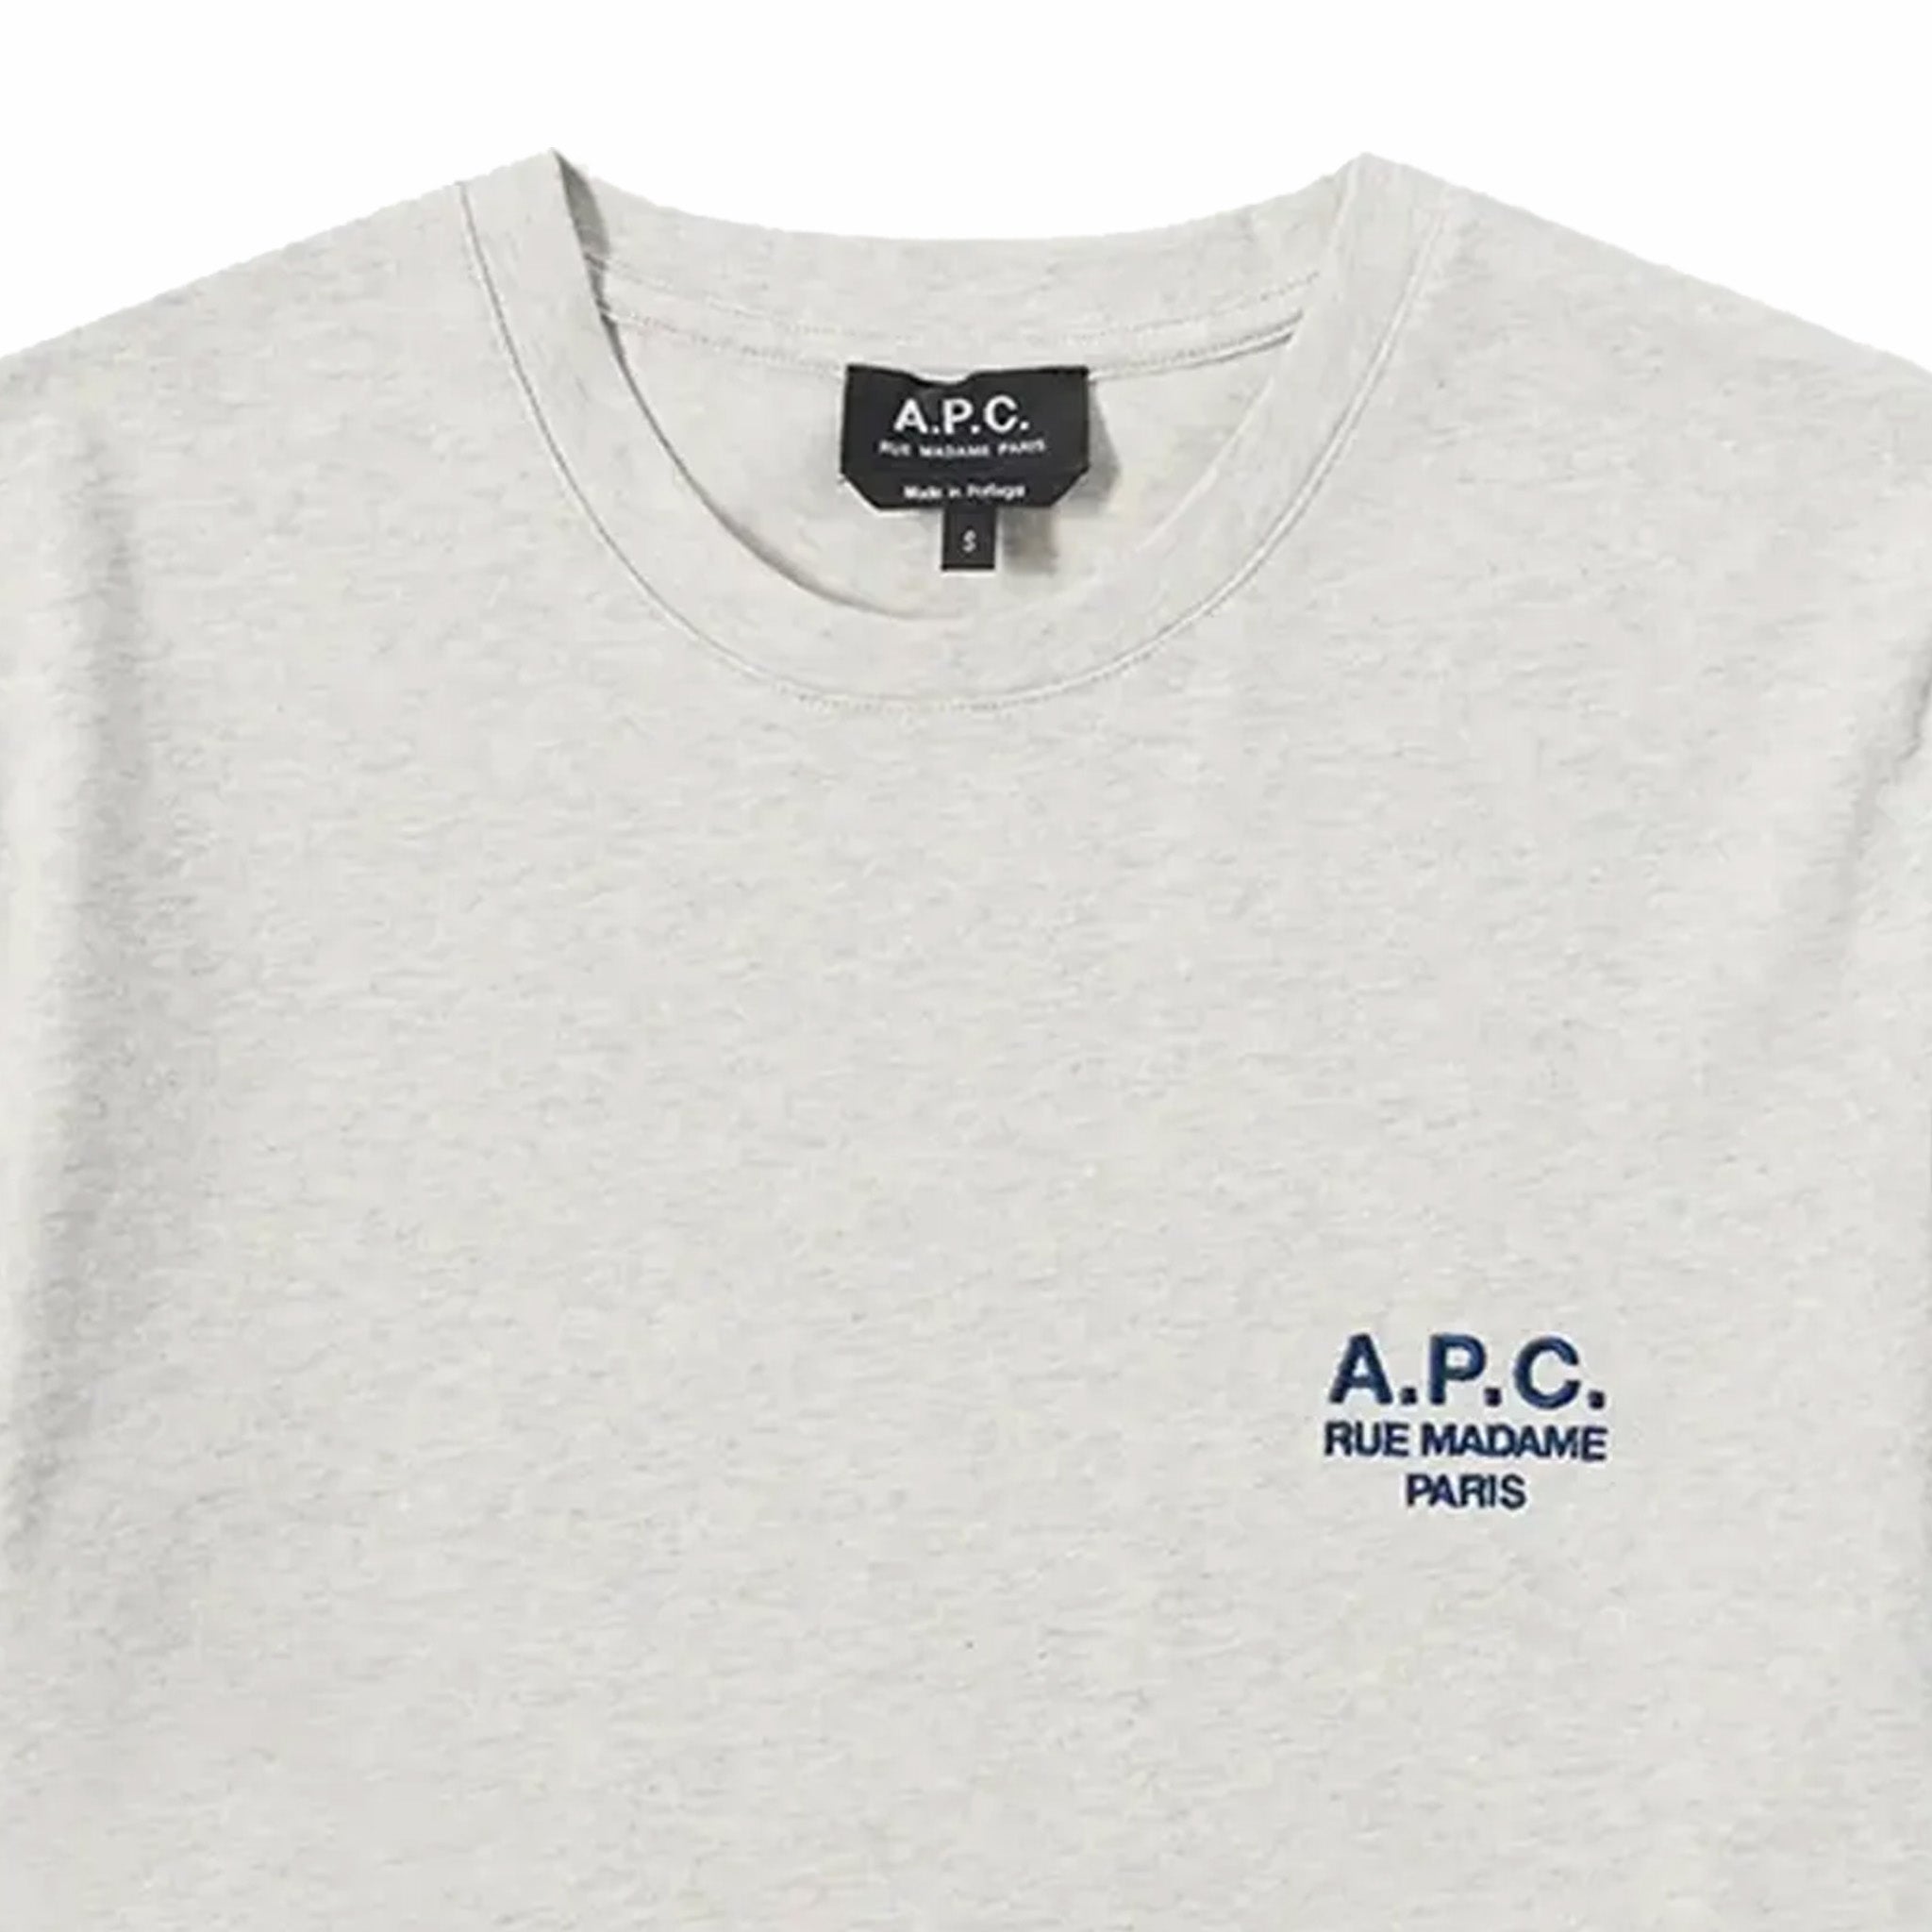 A.P.C. Raymond T-Shirt (Heathered Ecru) - August Shop